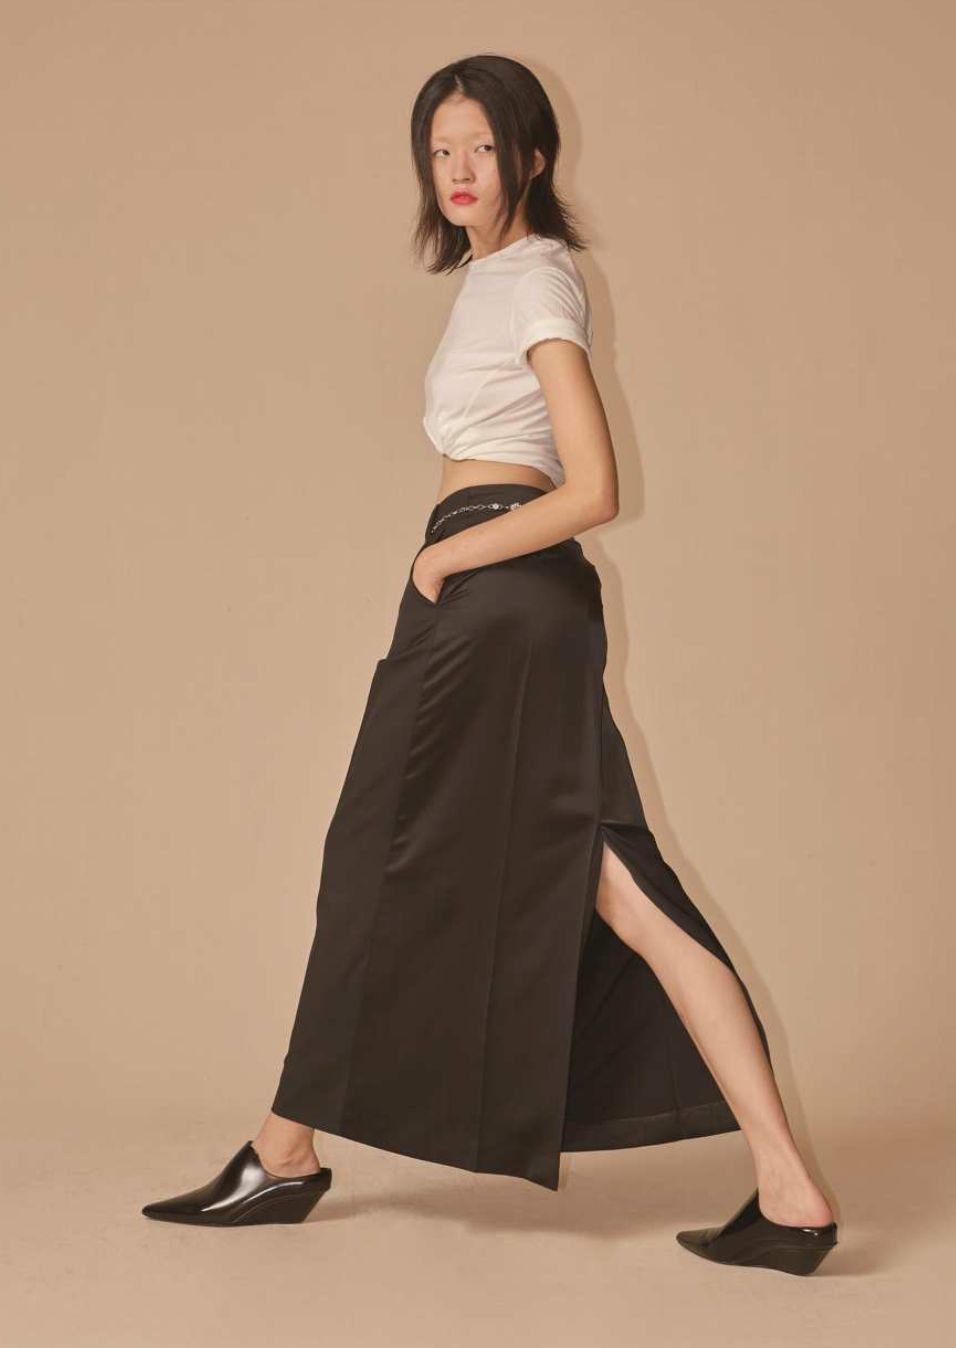 Paneled Long Skirt - Black